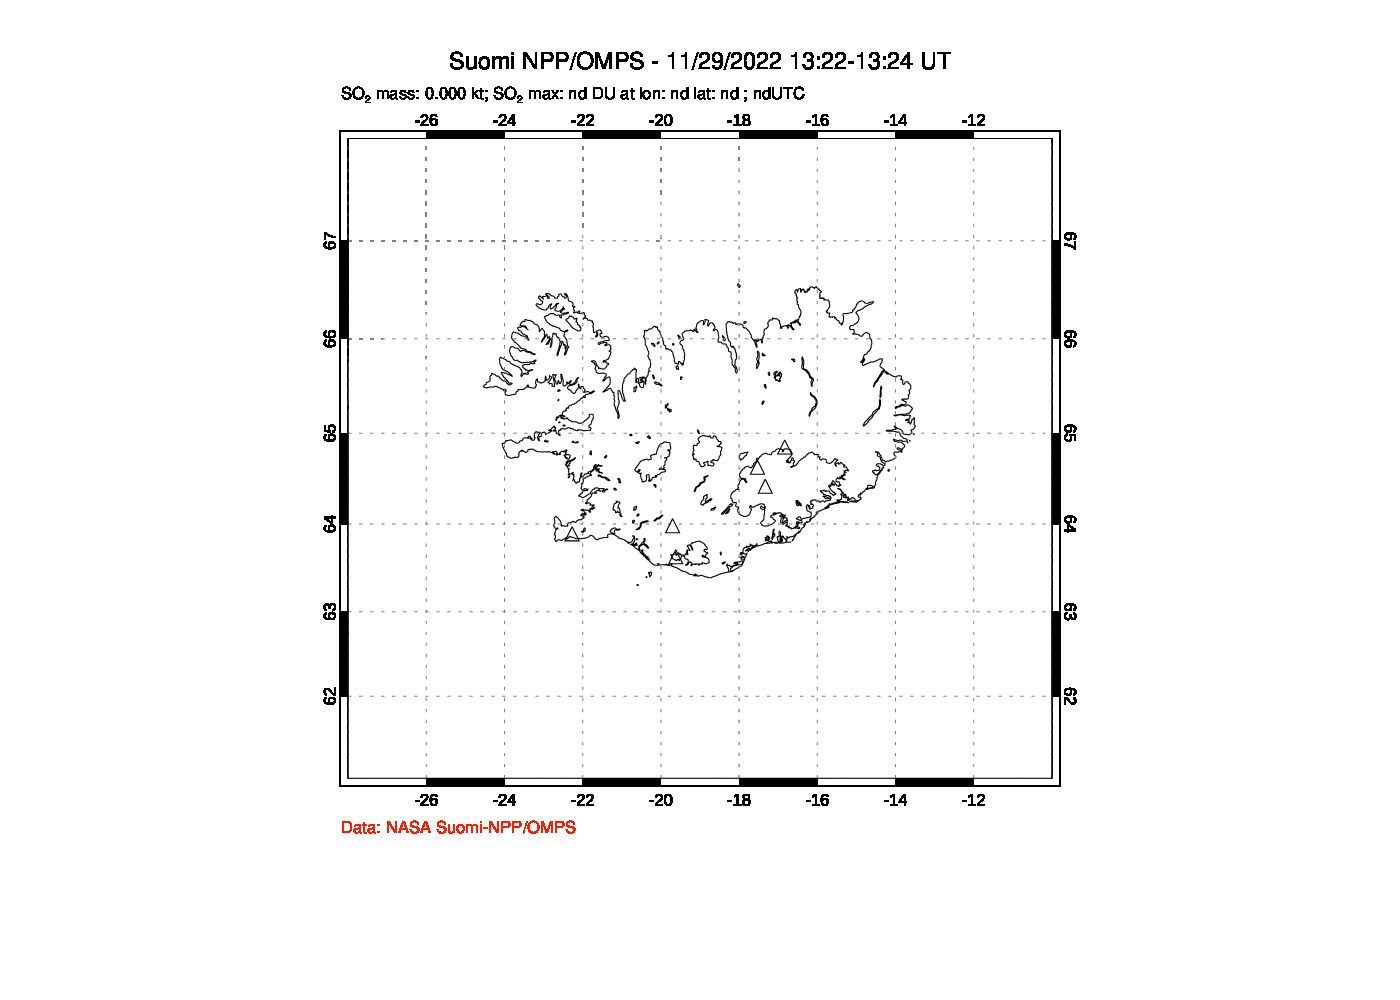 A sulfur dioxide image over Iceland on Nov 29, 2022.